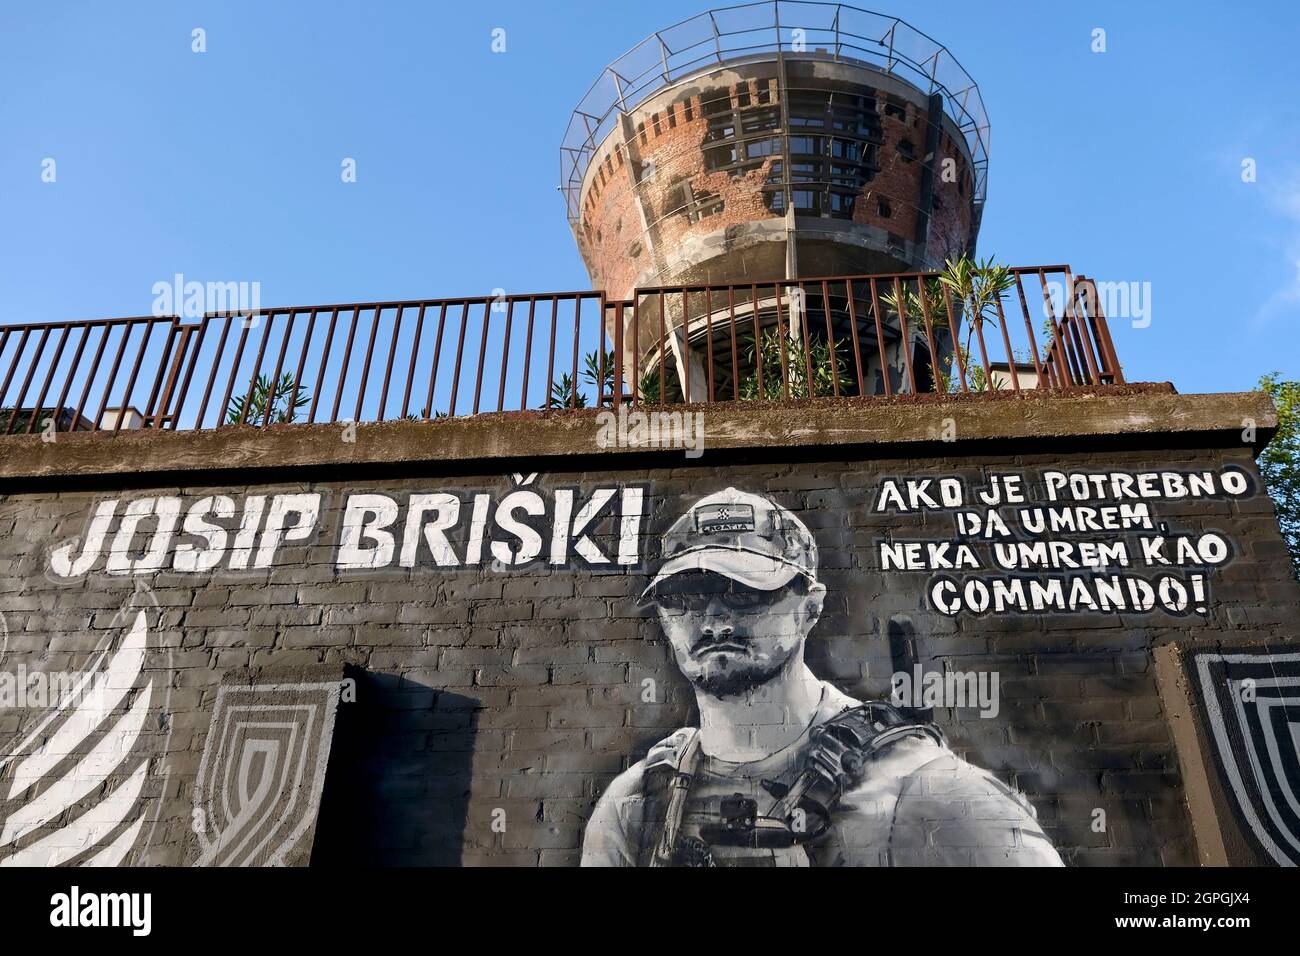 Croazia, Slavonia, Vukovar, la torre dell'acqua, simbolo della resistenza della città contro il nemico durante l'assedio di Vukovar nel 1991, ha colpito più di 600 volte in 3 mesi, ora un memoriale, affresco del soldato Josip Briski è morto in Afghanistan nel 2019 Foto Stock